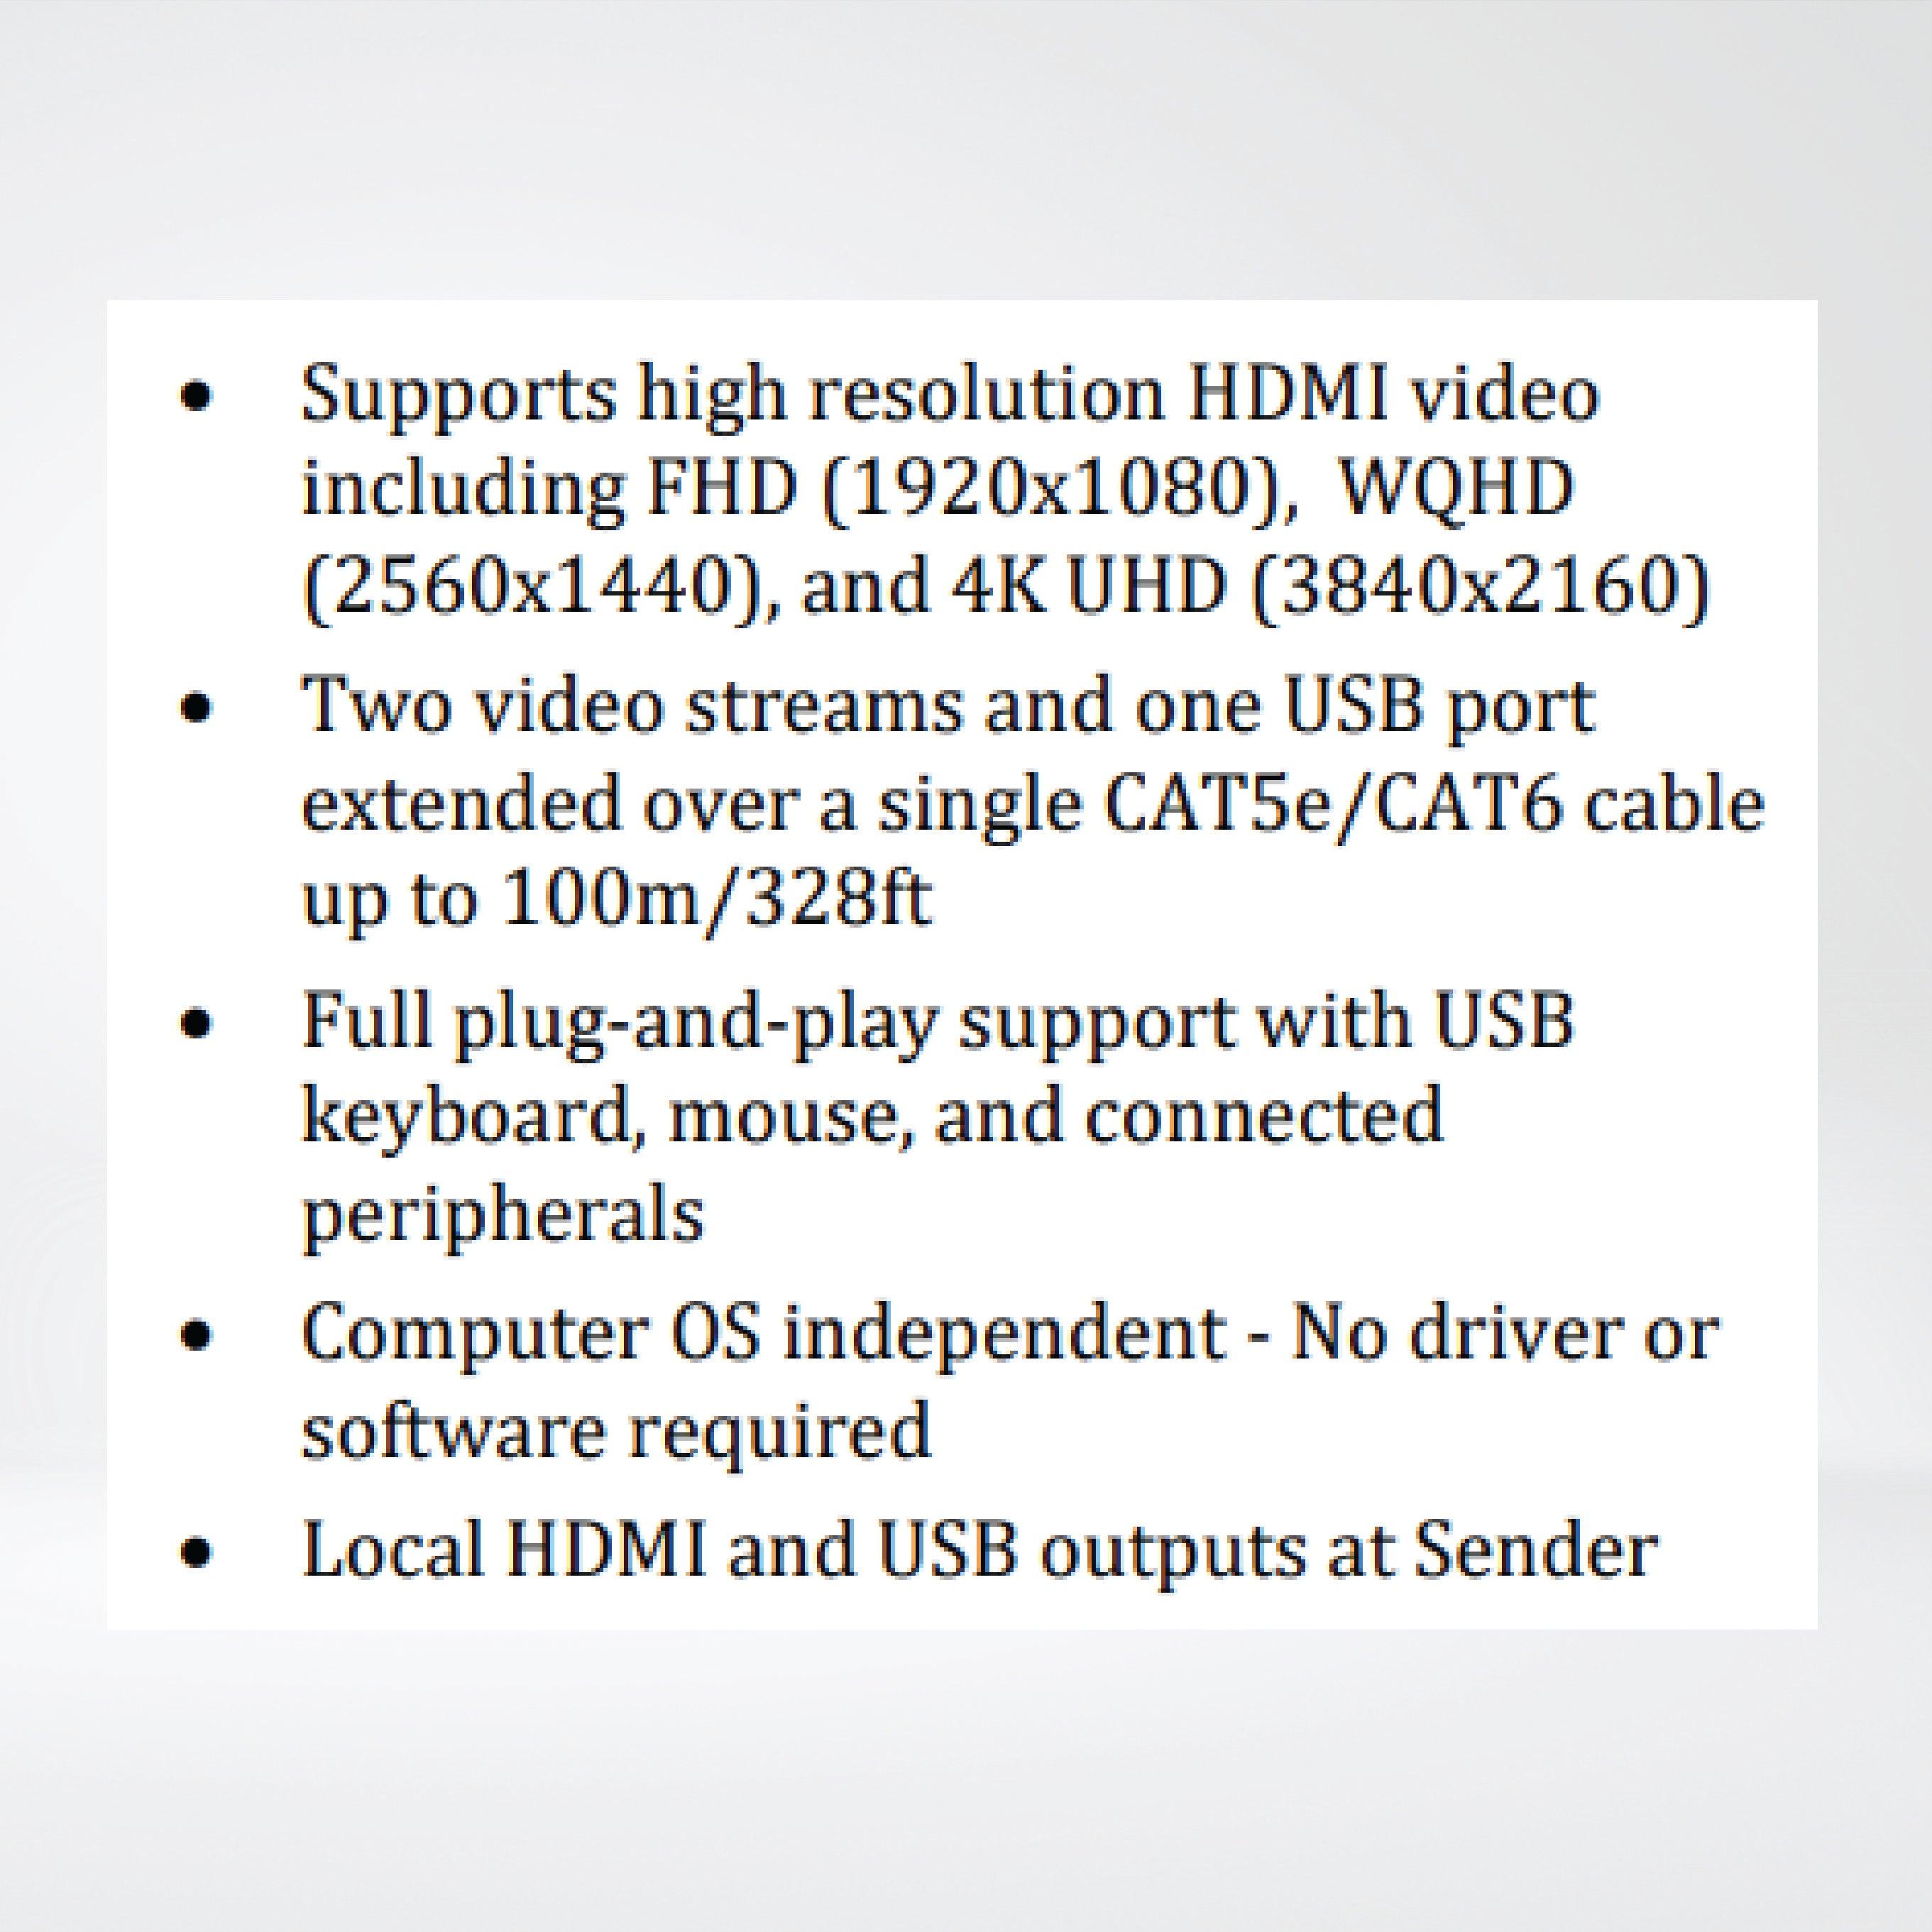 ULTRA-4K-S Dual-Head HDMI and USB 2.0 KVM Extender - Riverplus